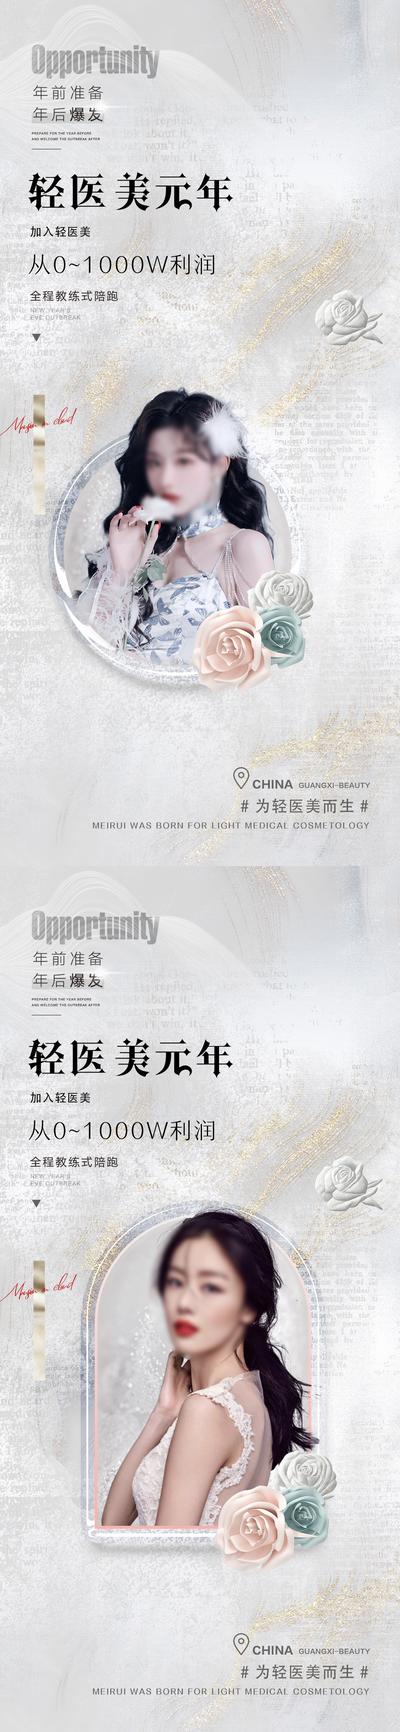 南门网 广告 海报 节日 邀请函 人物 纹理 肌理 品质 系列